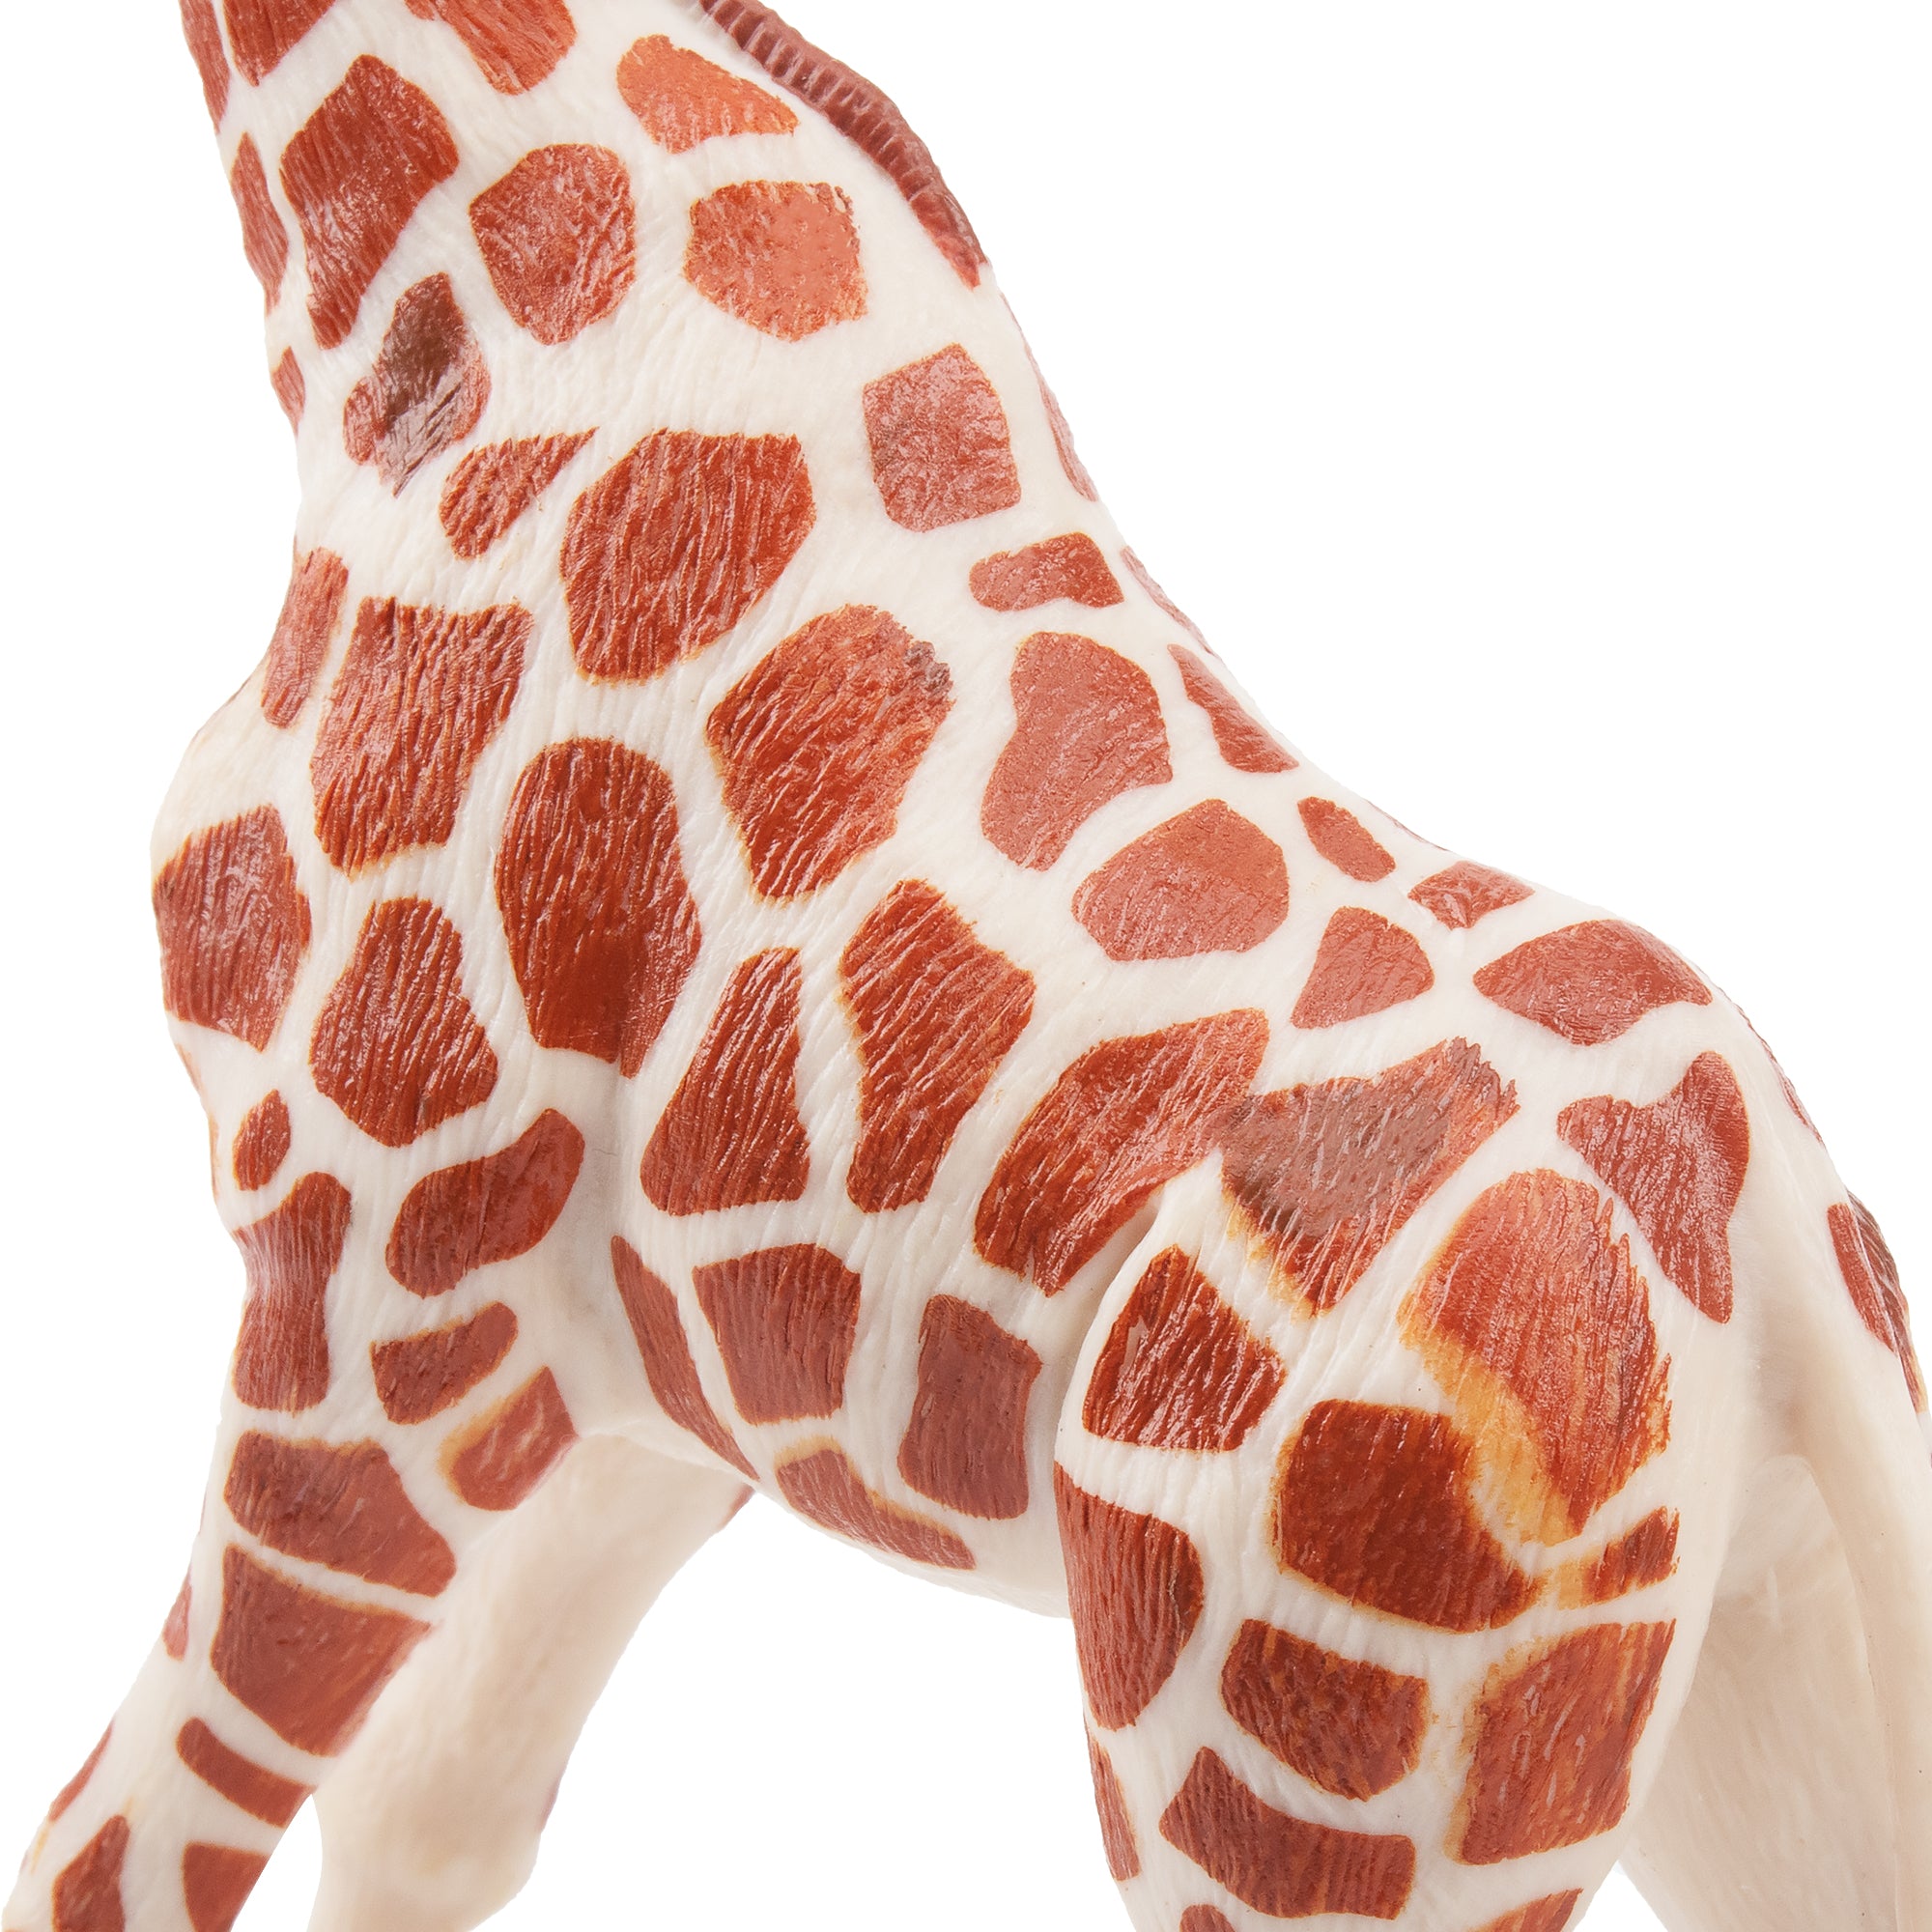 Toymany Giraffe Figurine Toy-detail 2